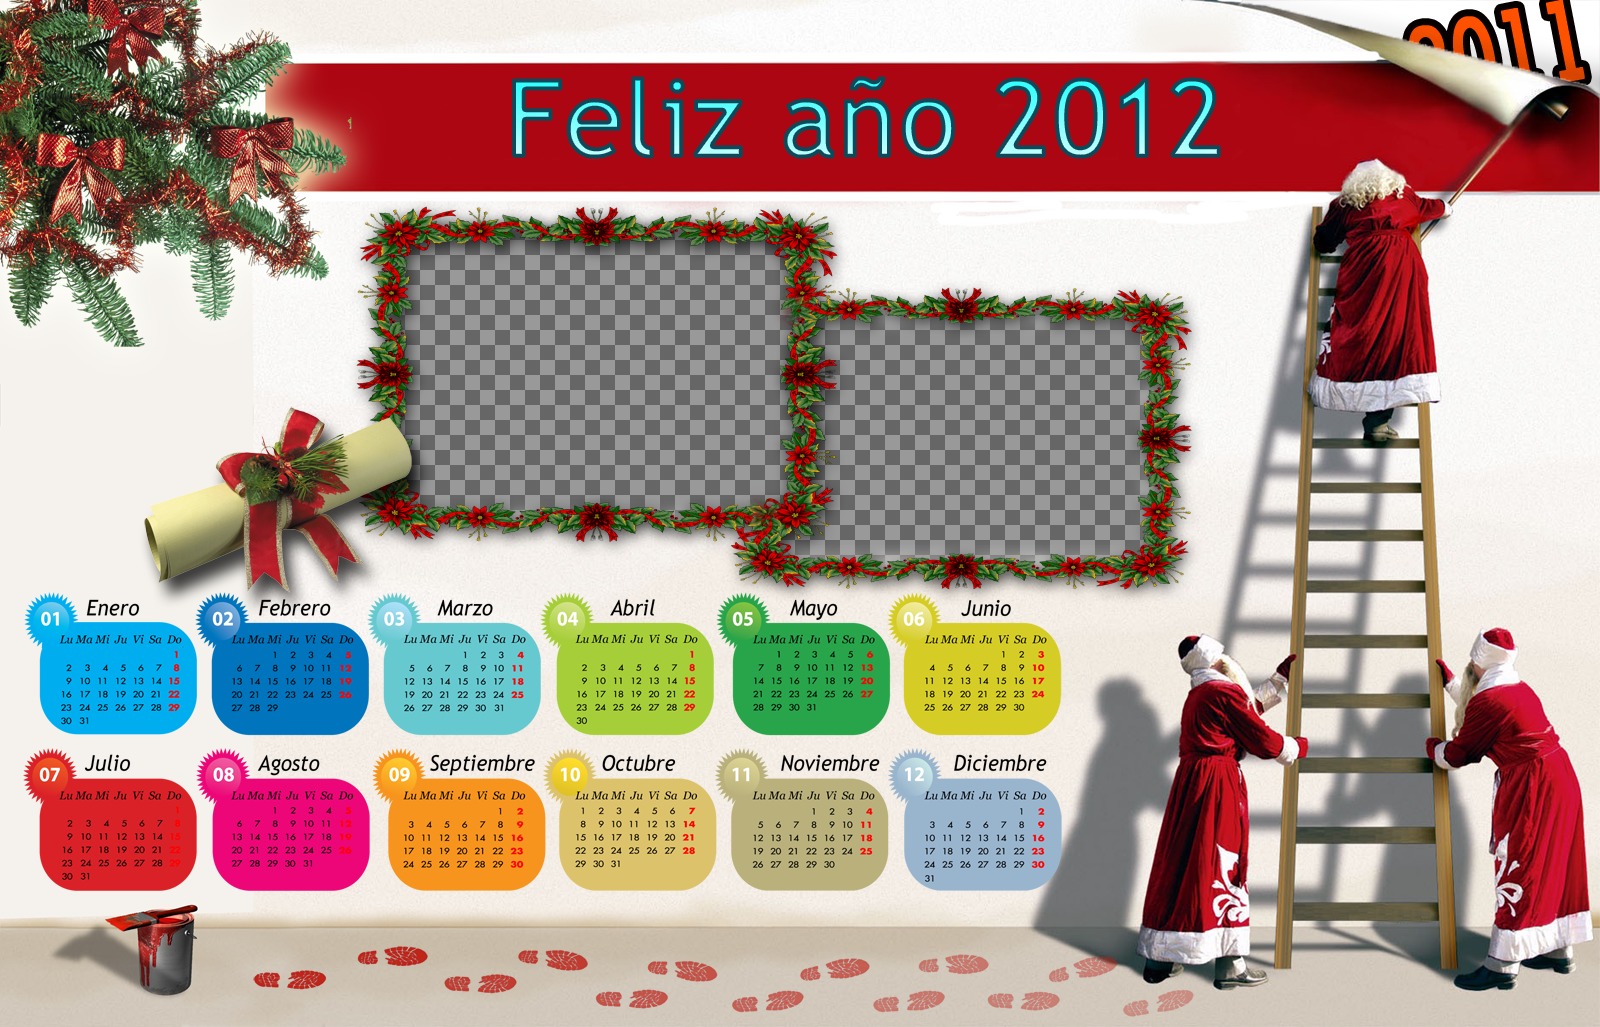 Calendrier 2012 avec les mois coloresy Noël et le Père Noël..